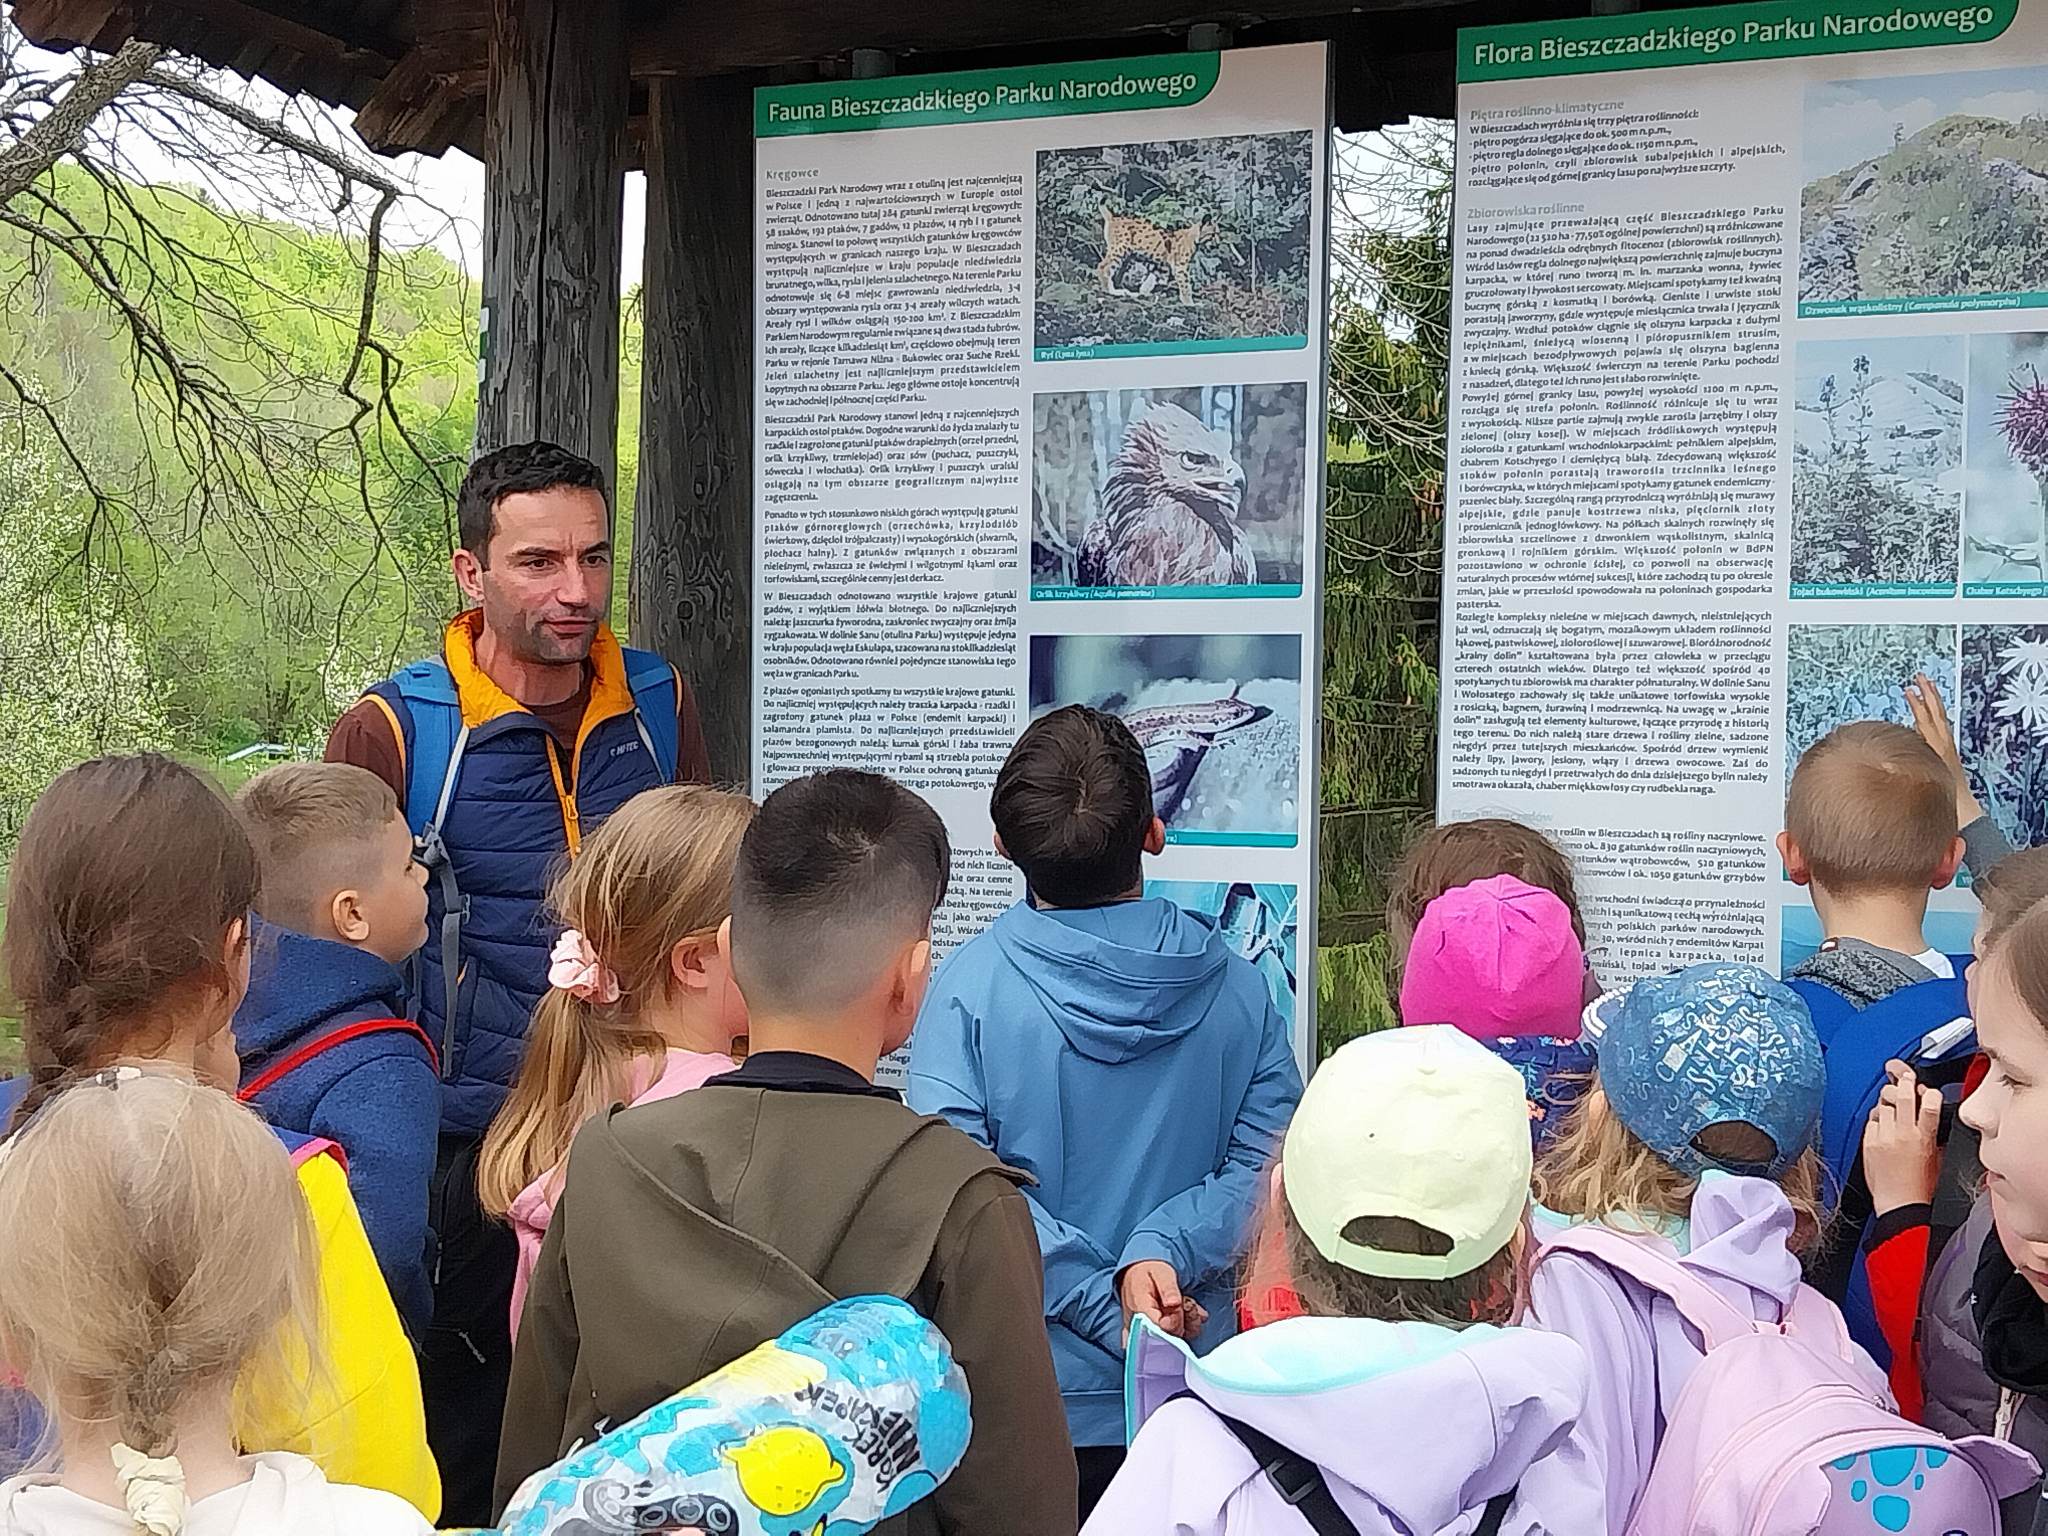 Grupa dzieci słucha opowiadania przewodnika przy tablicy informacyjnej na szlaku